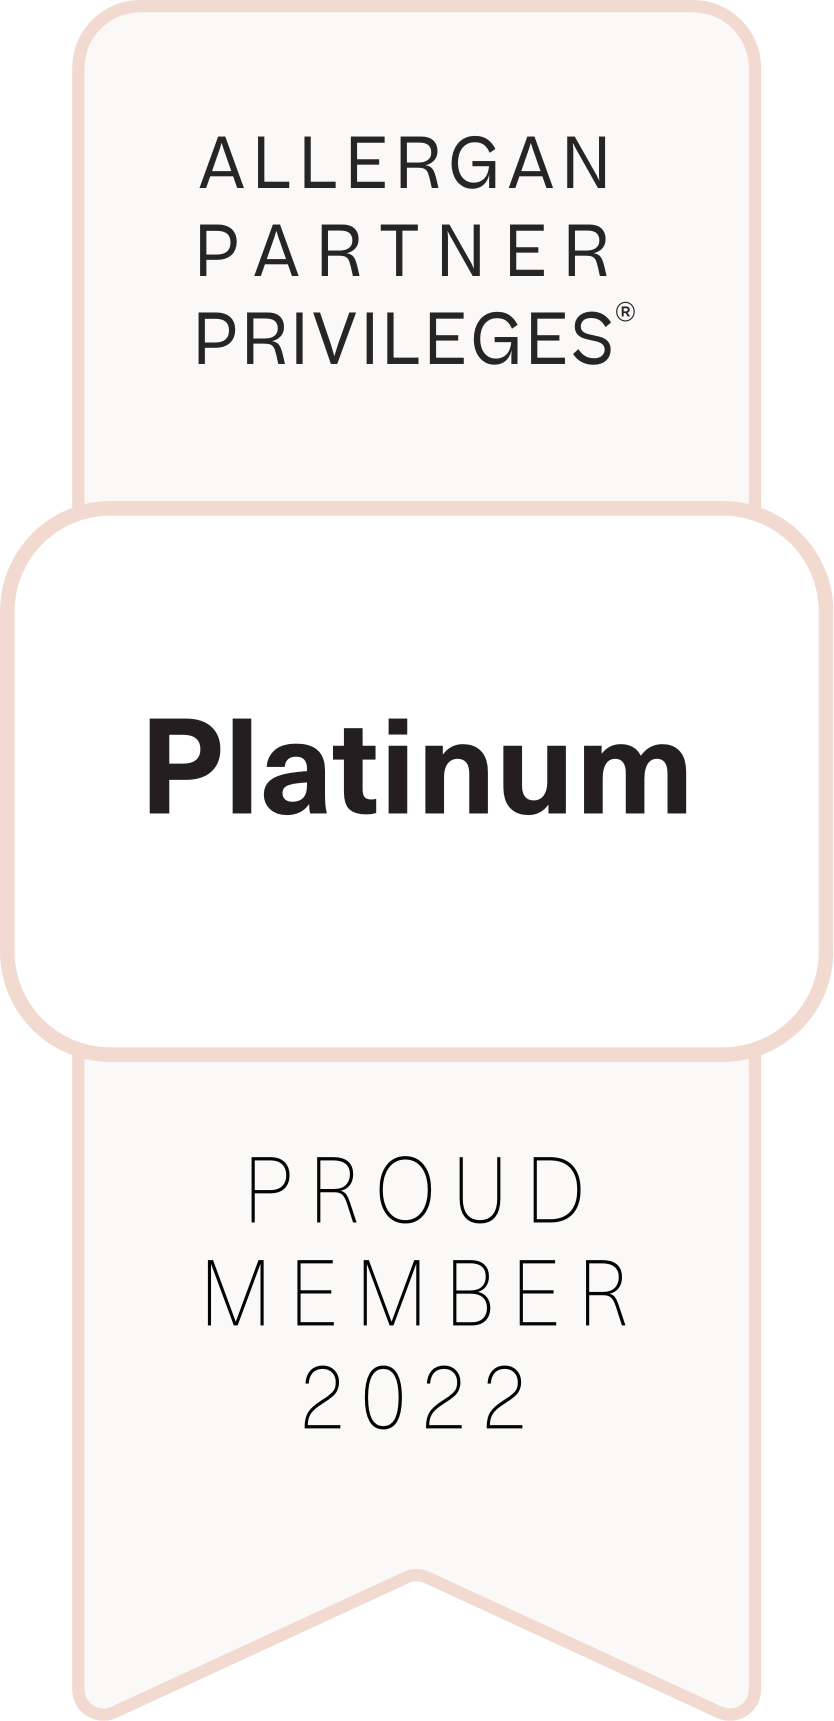 Allergan Partner Platinum 2022 Banner